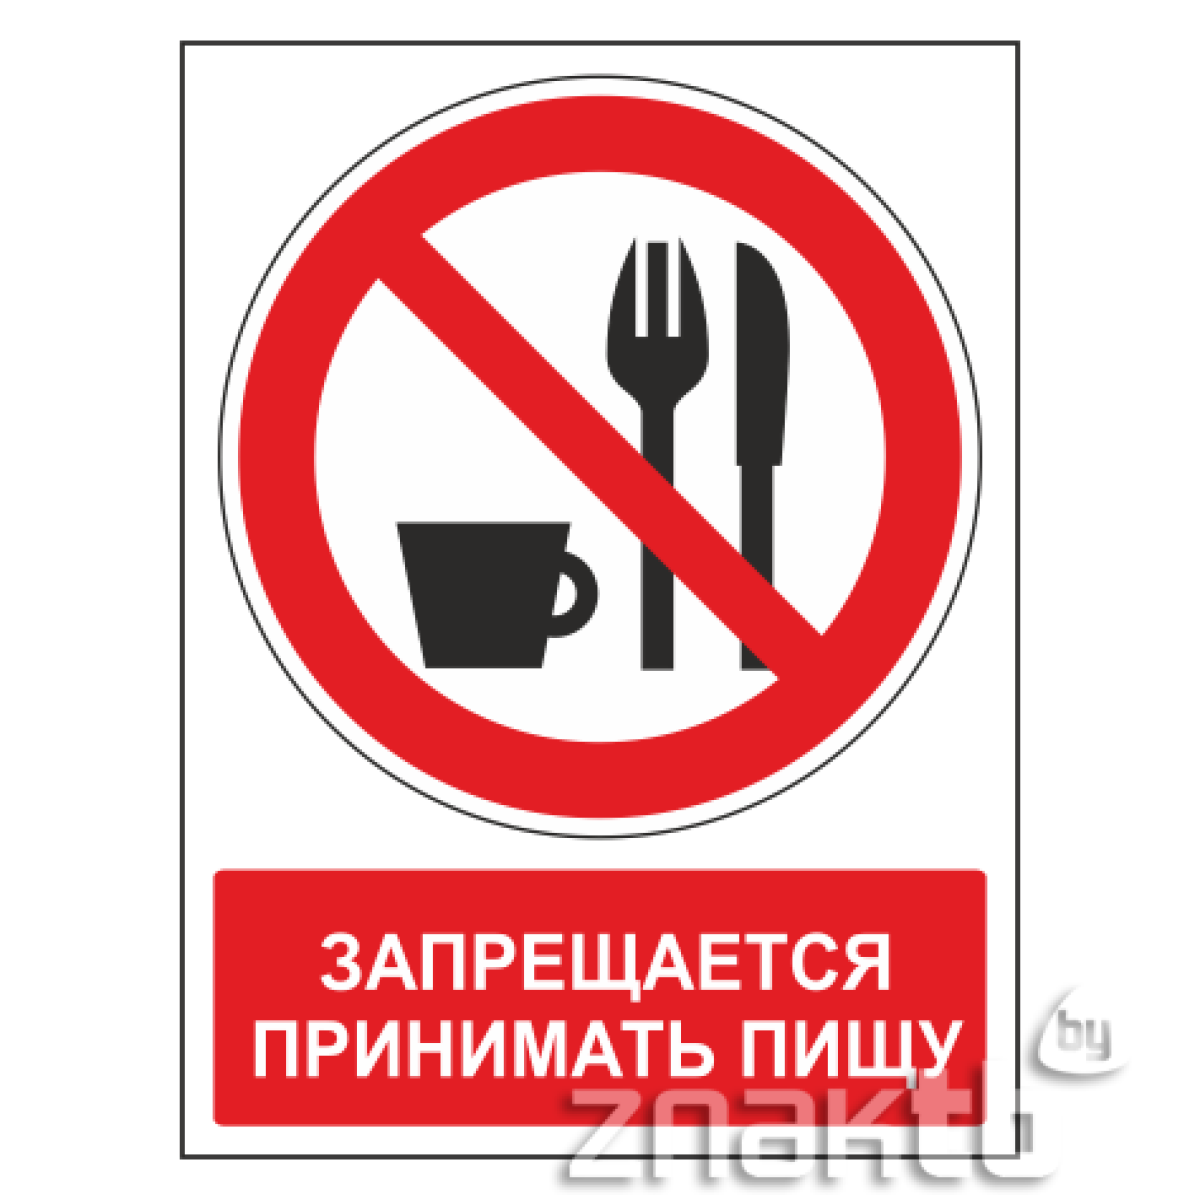 Знак Запрещается принимать пищу (с поясняющей надписью)